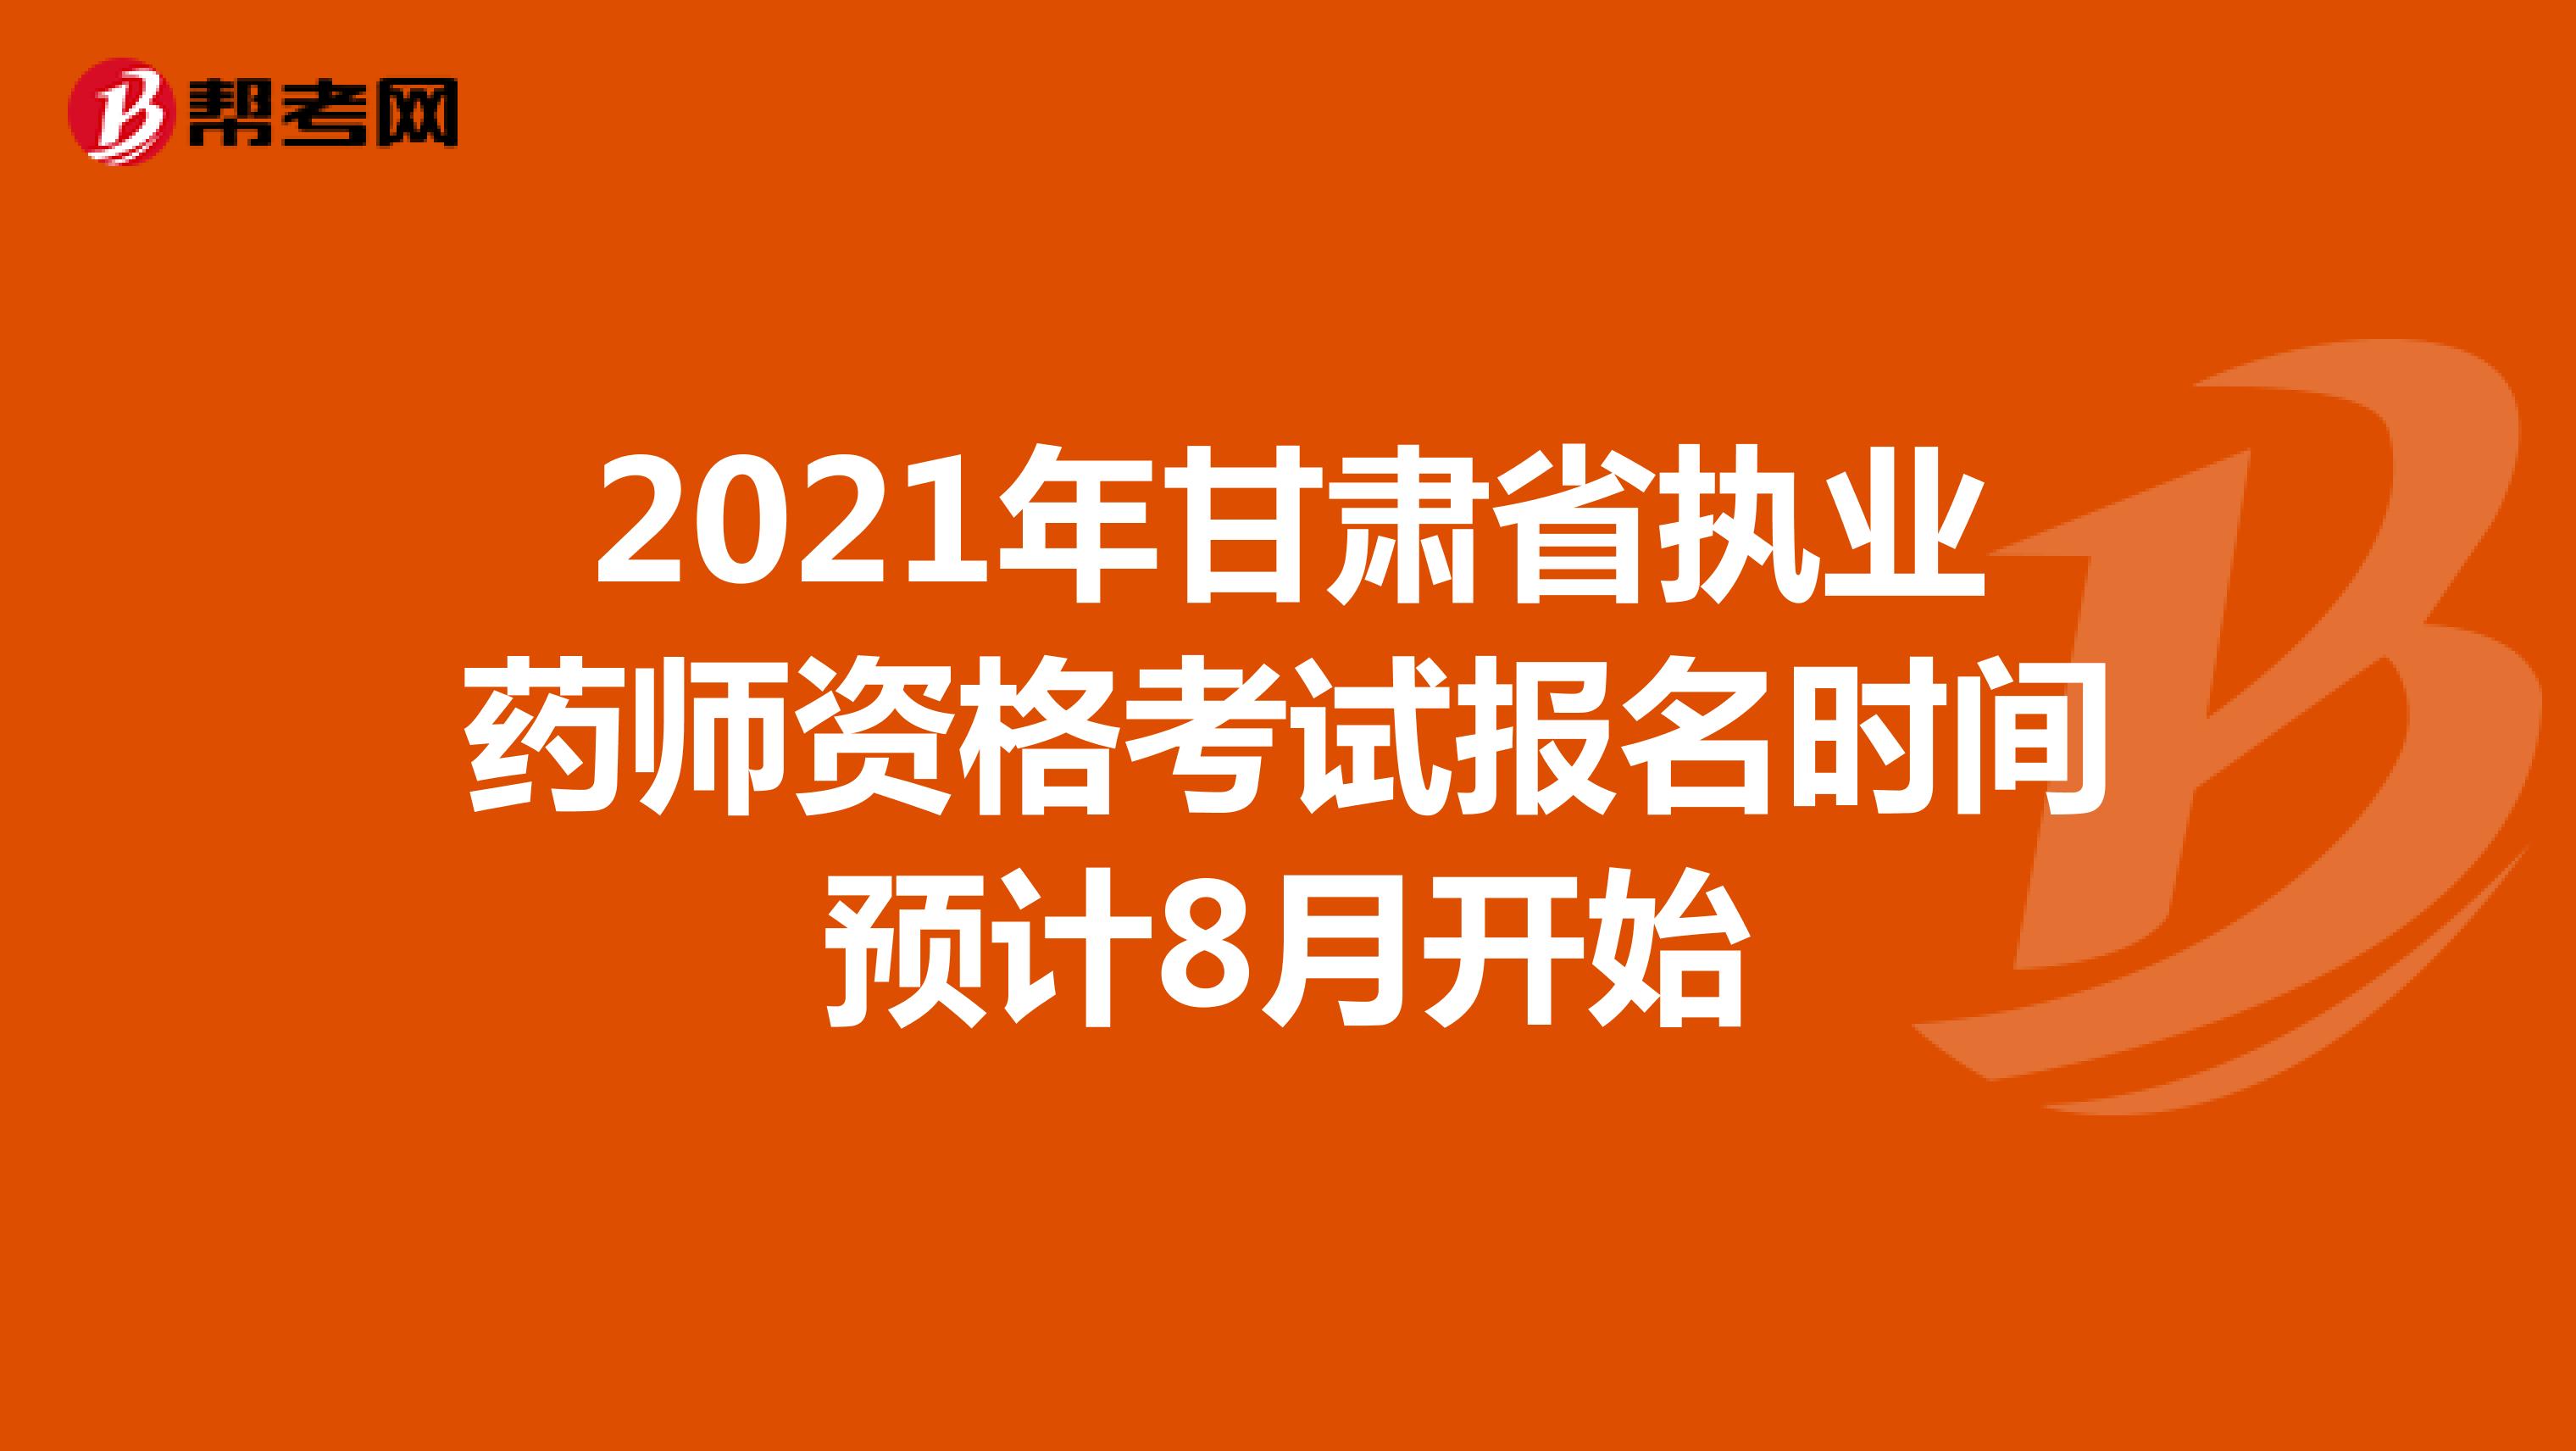 2021年甘肃省执业药师资格考试报名时间预计8月开始